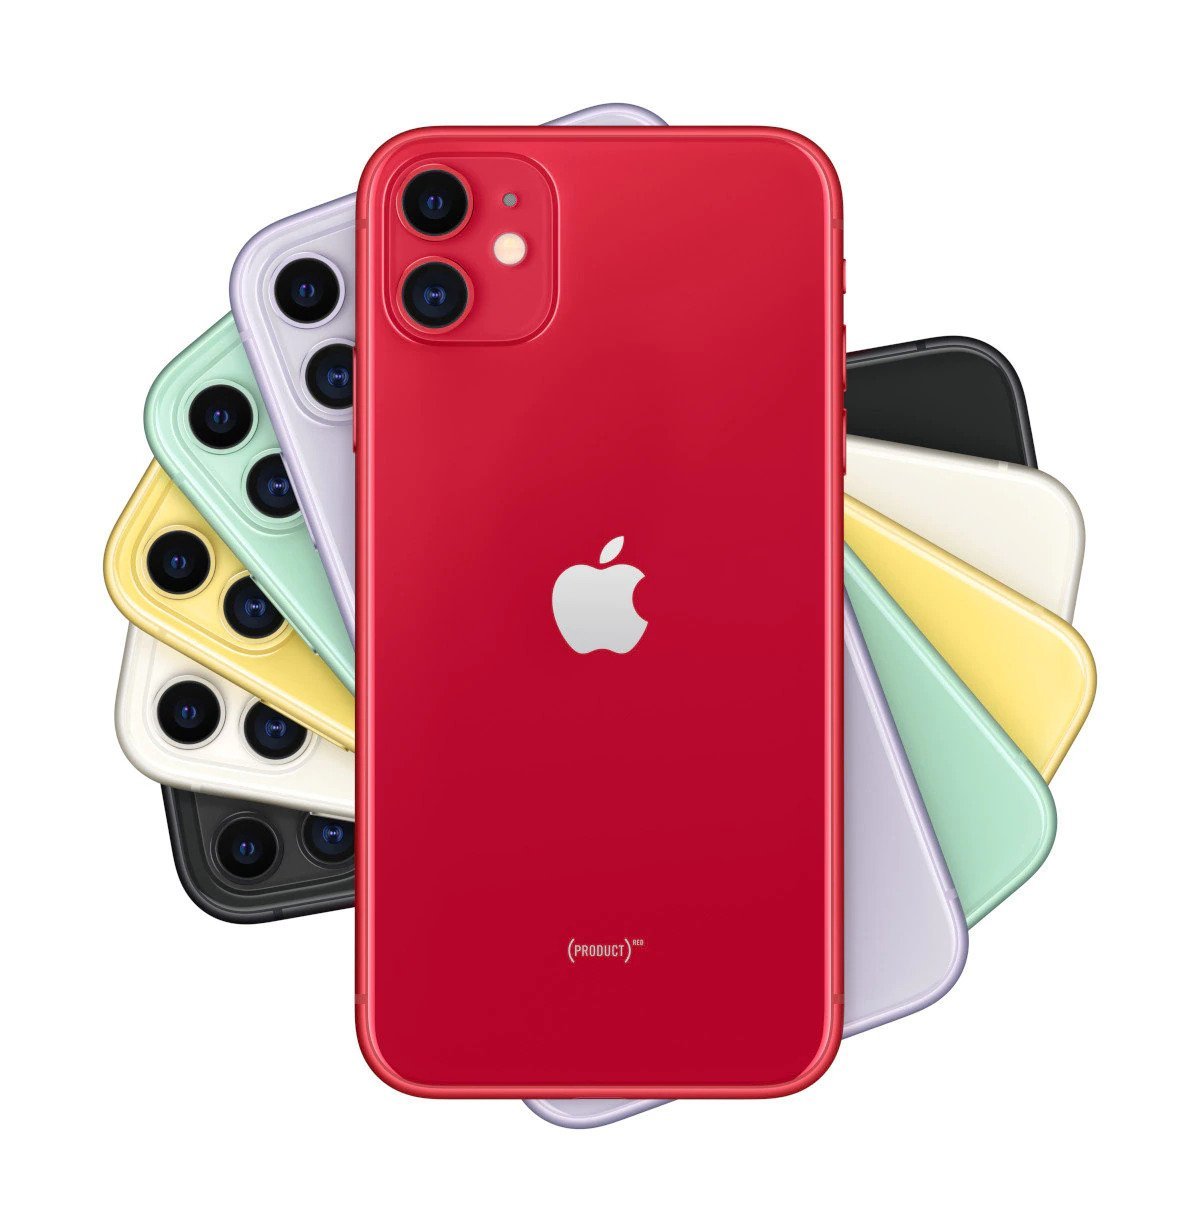 Smartfon Apple iPhone 11 MHDD3PM/A 64GB (PRODUCT)RED Czerwony widok od przodu na tył dostępnych wersji kolorystycznych